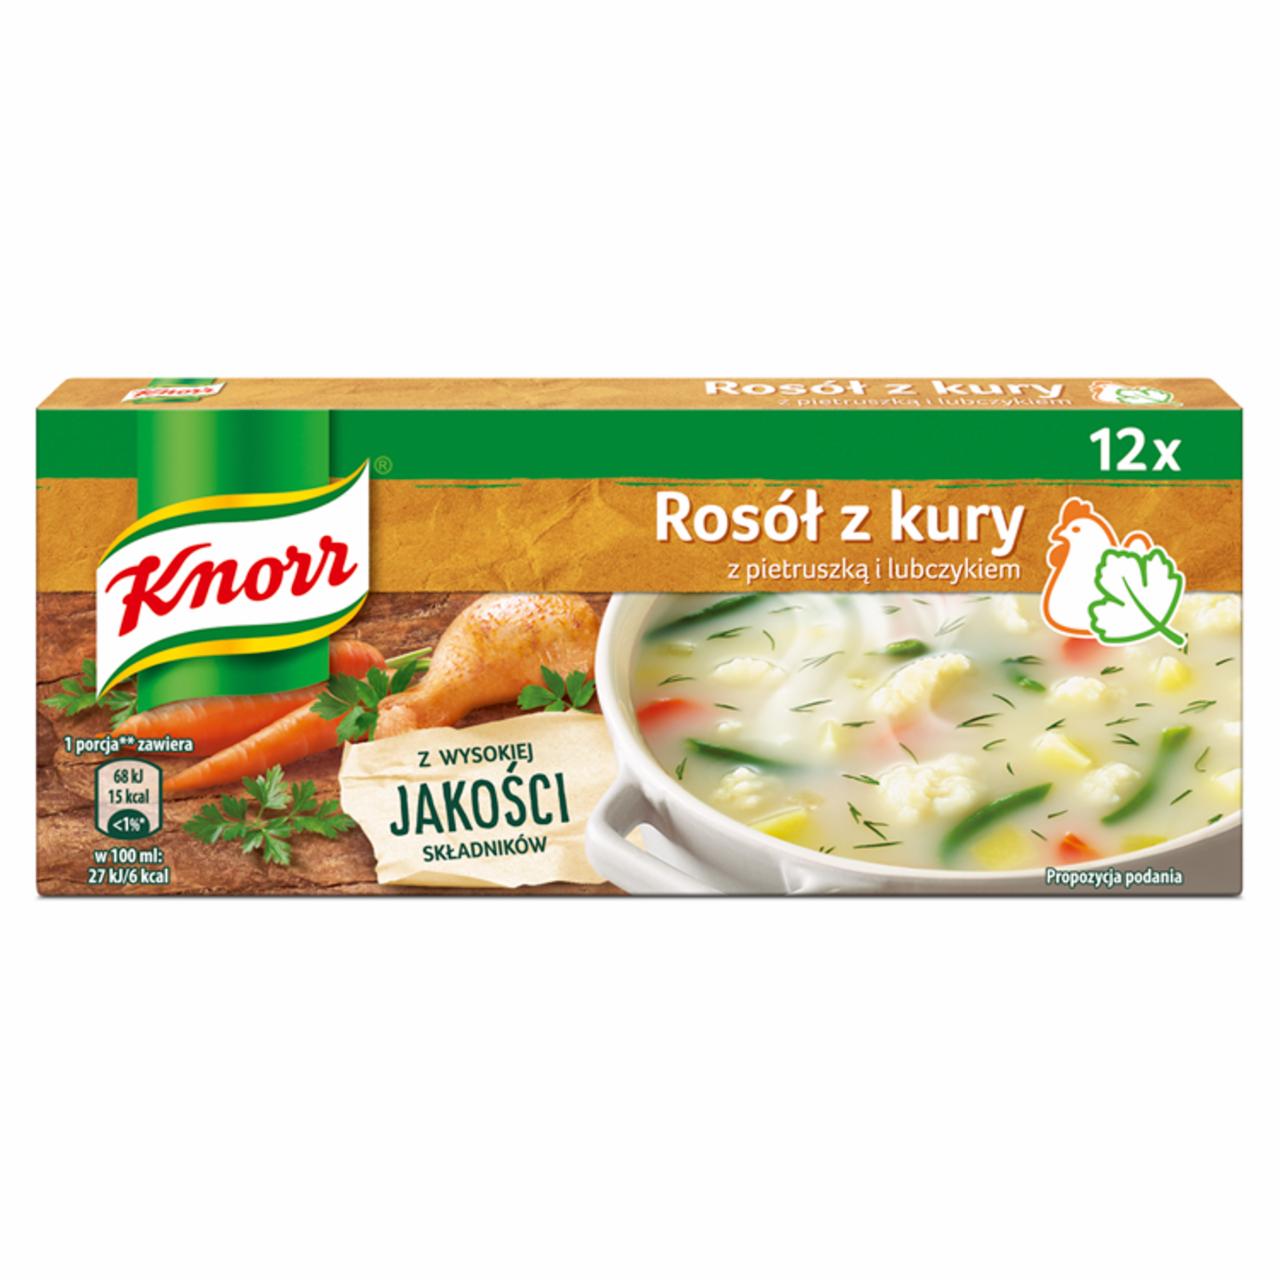 Zdjęcia - Knorr Rosół z kury z pietruszką i lubczykiem 120 g (12 x 10 g)